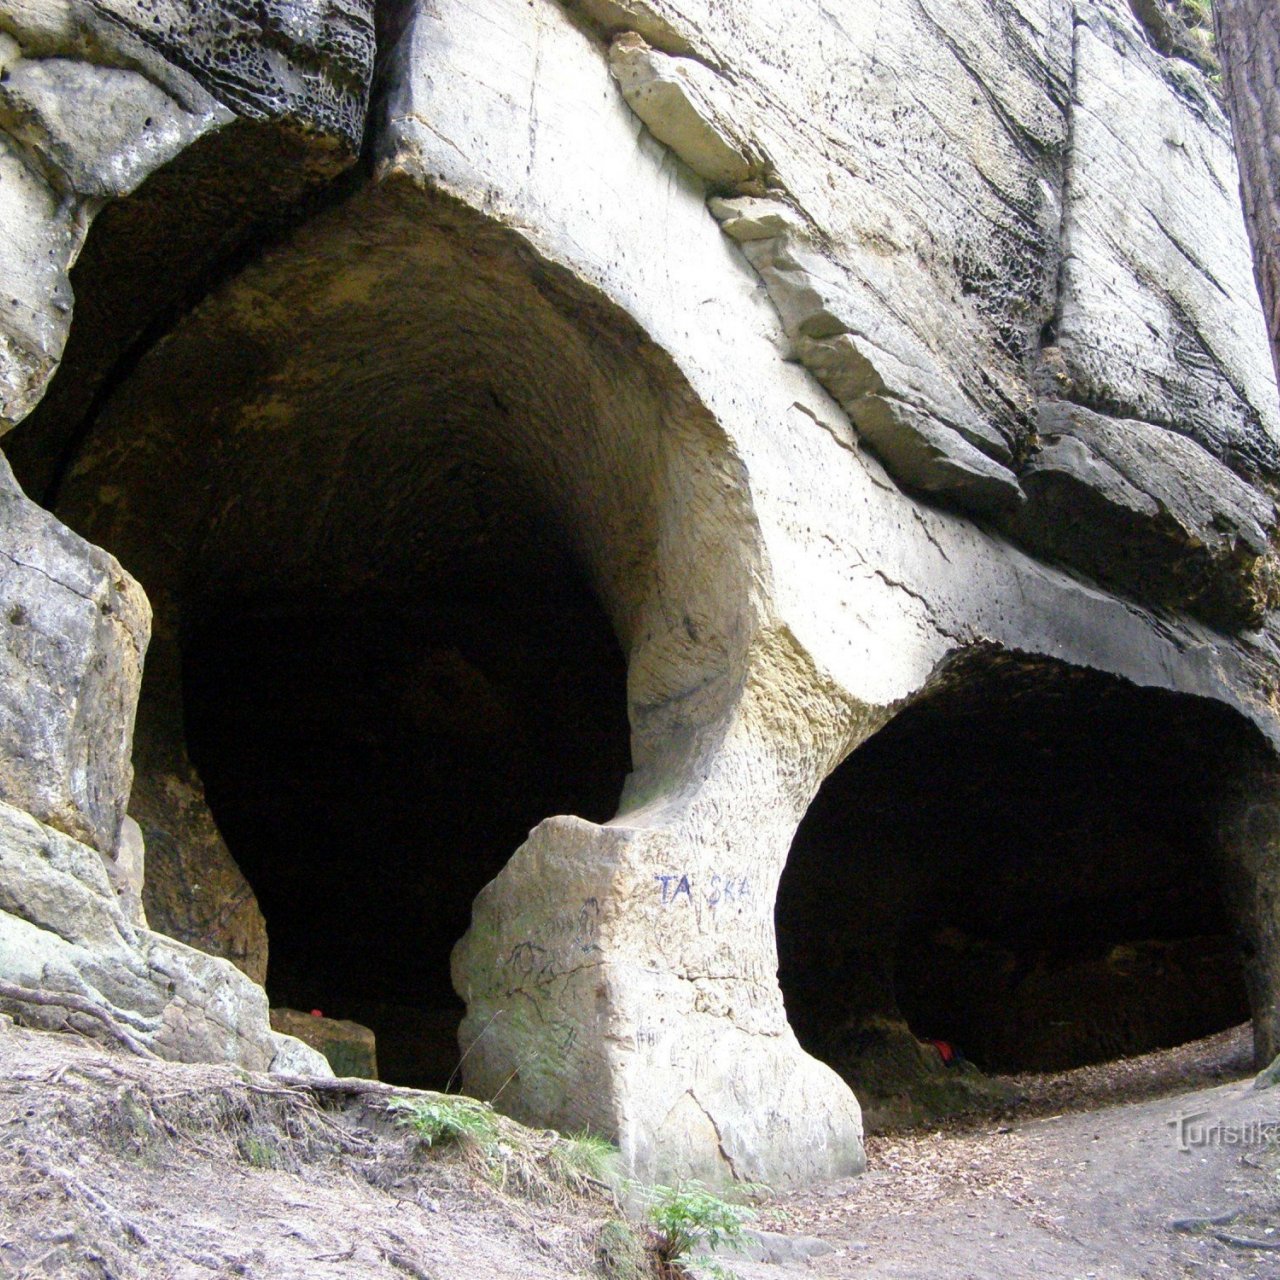 Cikánské jeskyně - Cikánské údolí